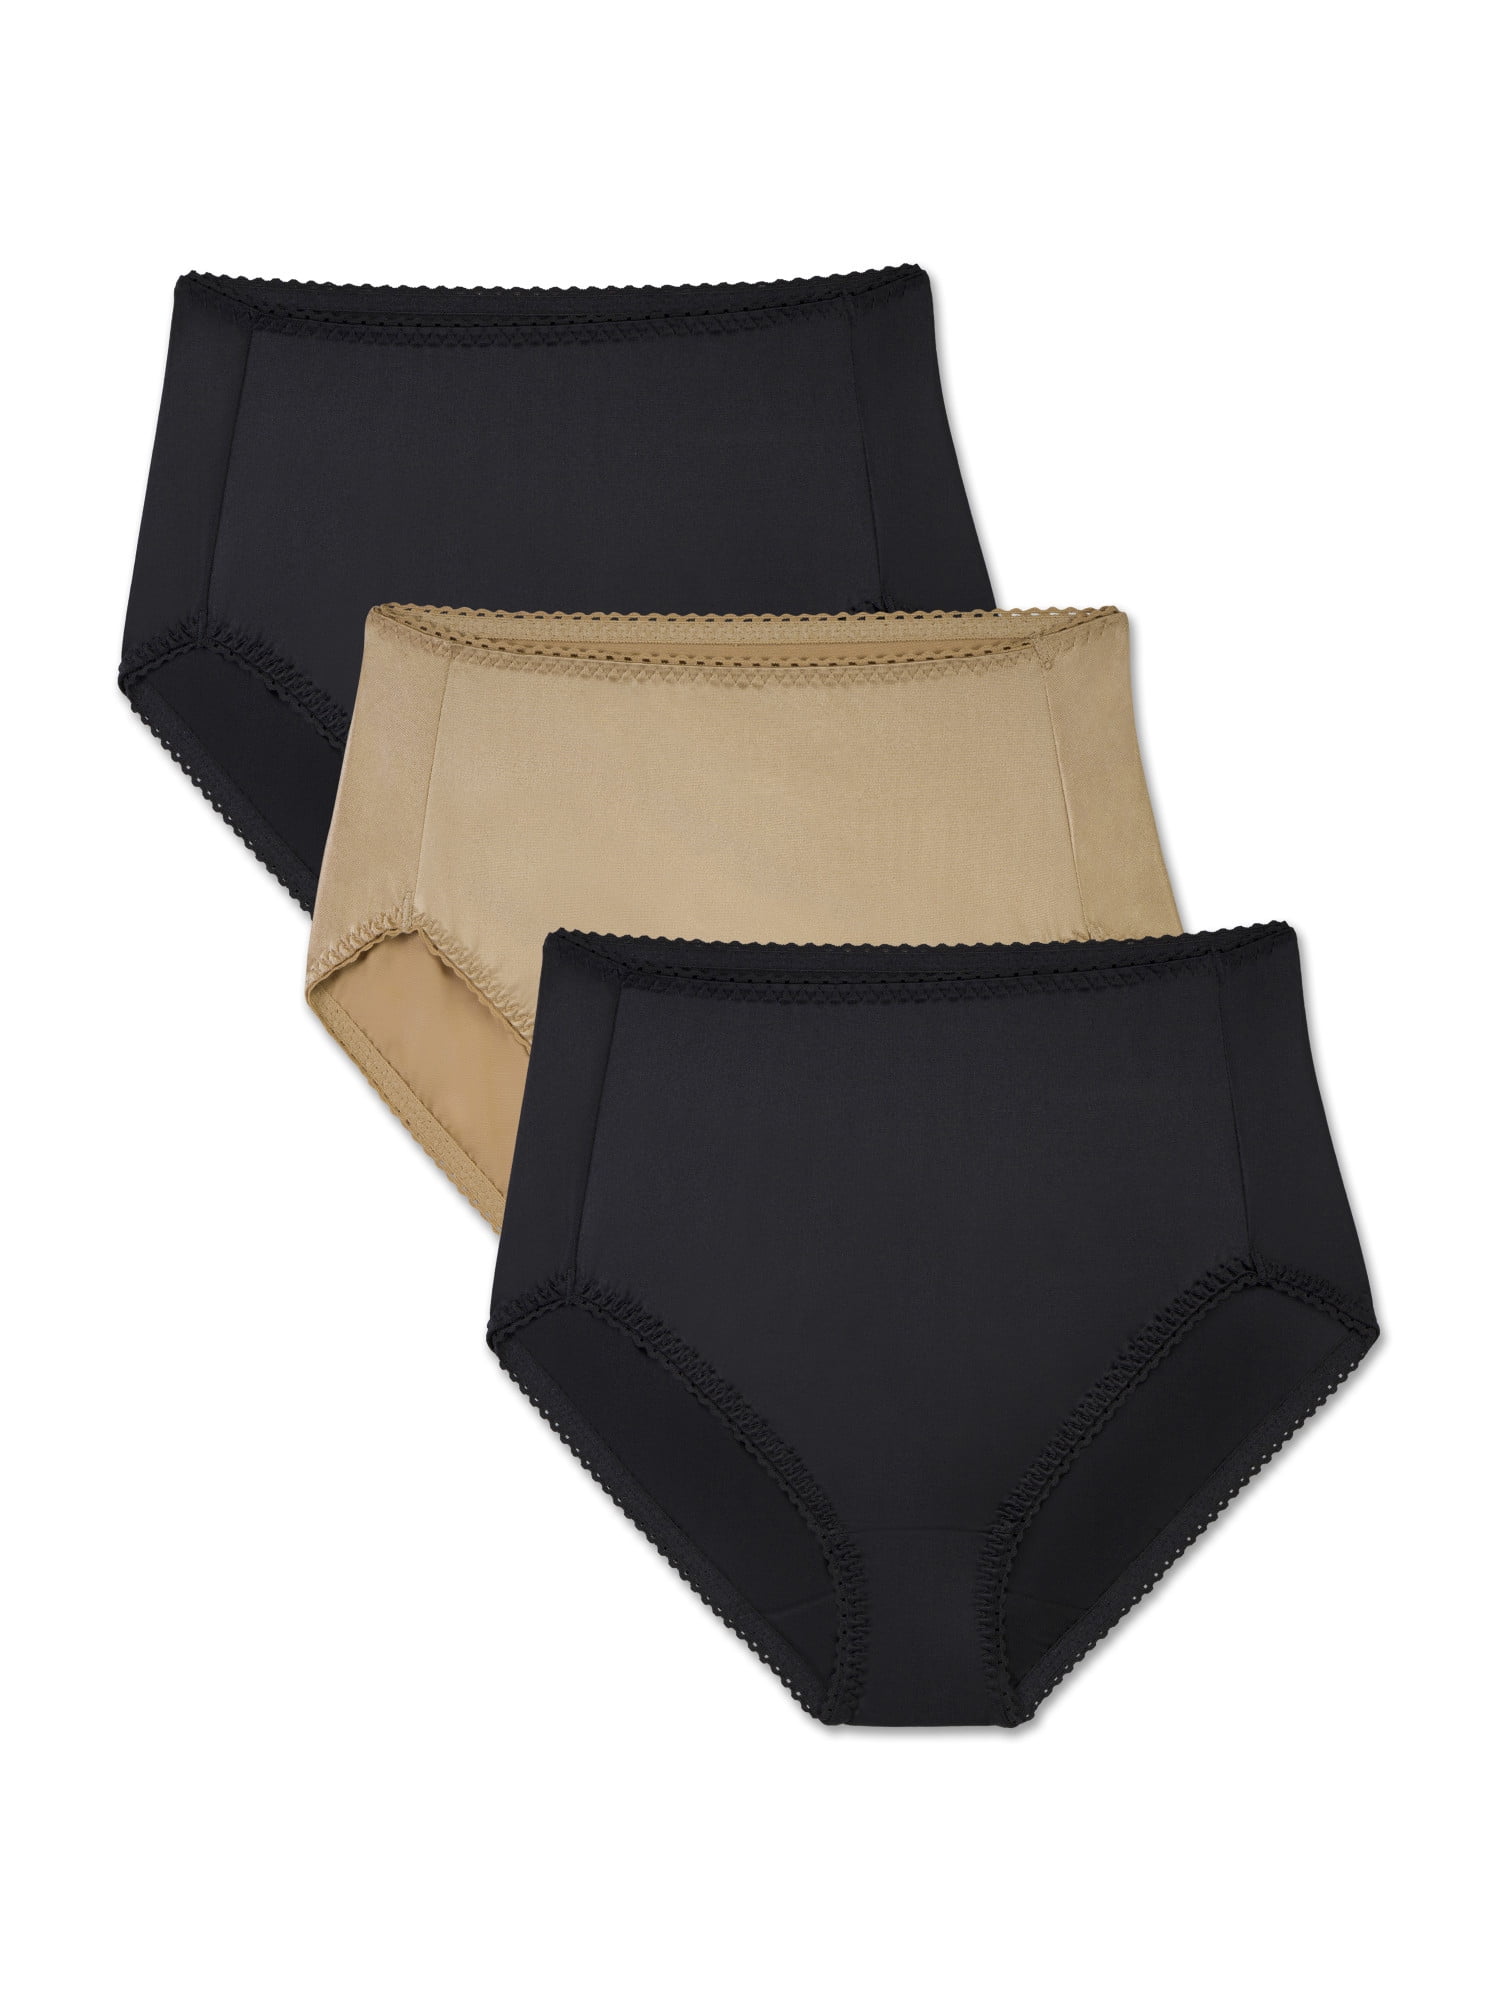 Hanes 6-Pack Hi-Cut Panties Cotton Womens Underwear Nepal